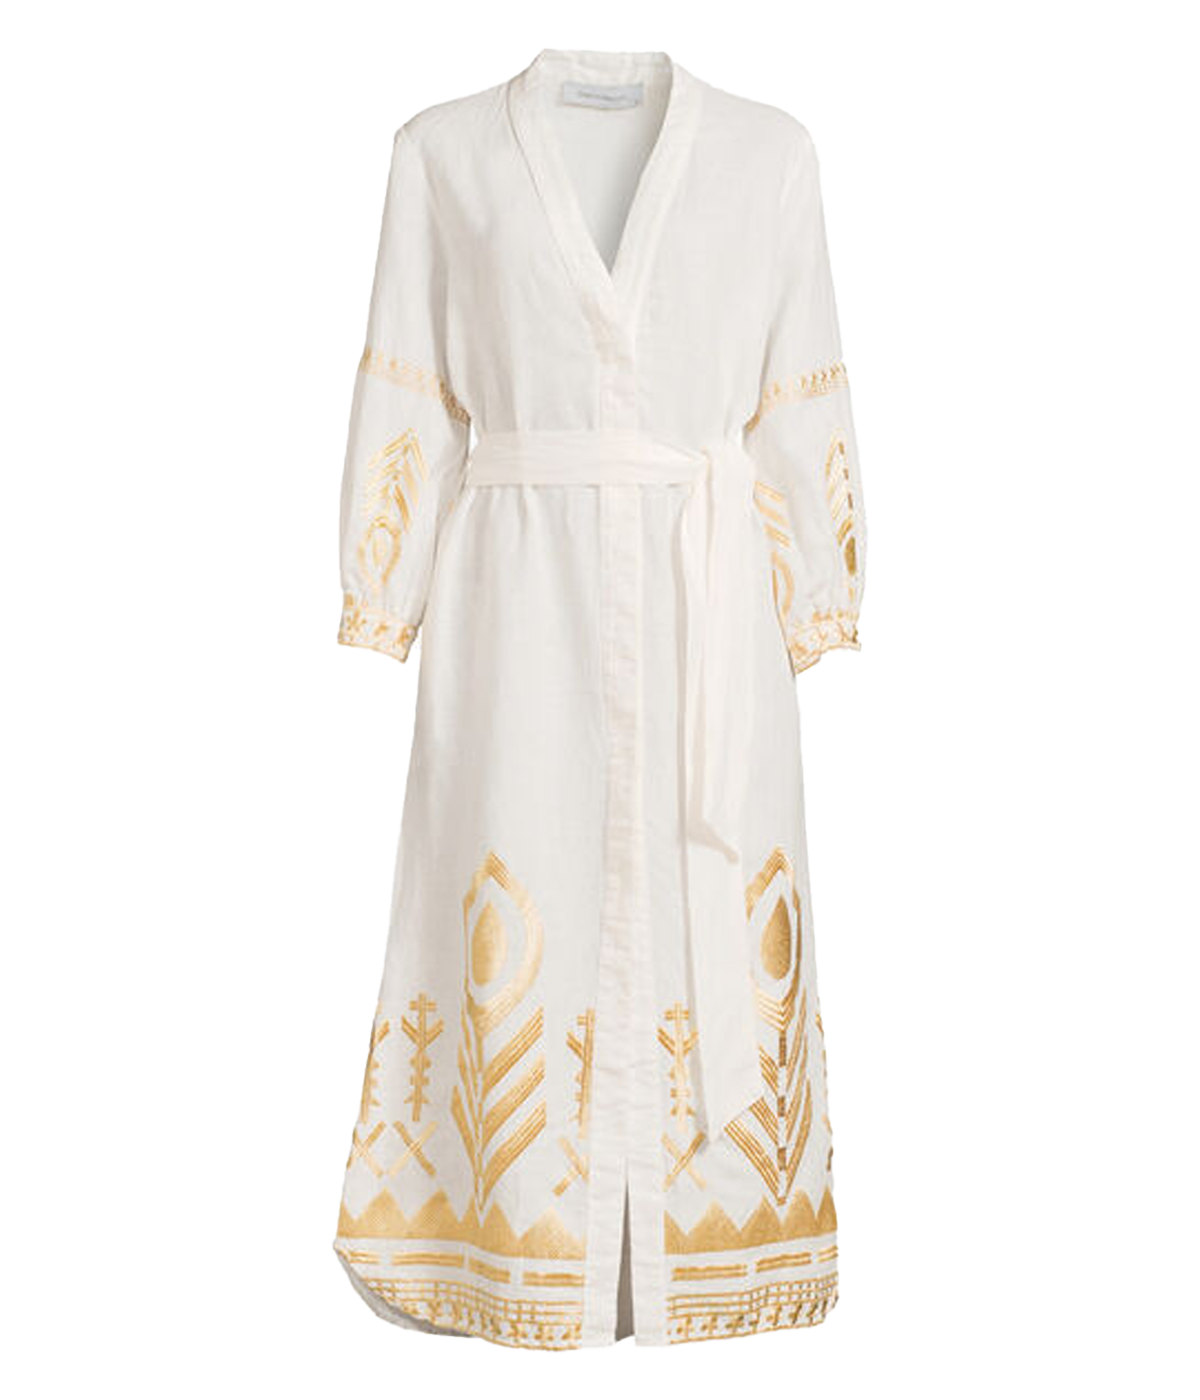 Mykonos Long Sleeve Dress in White & Gold